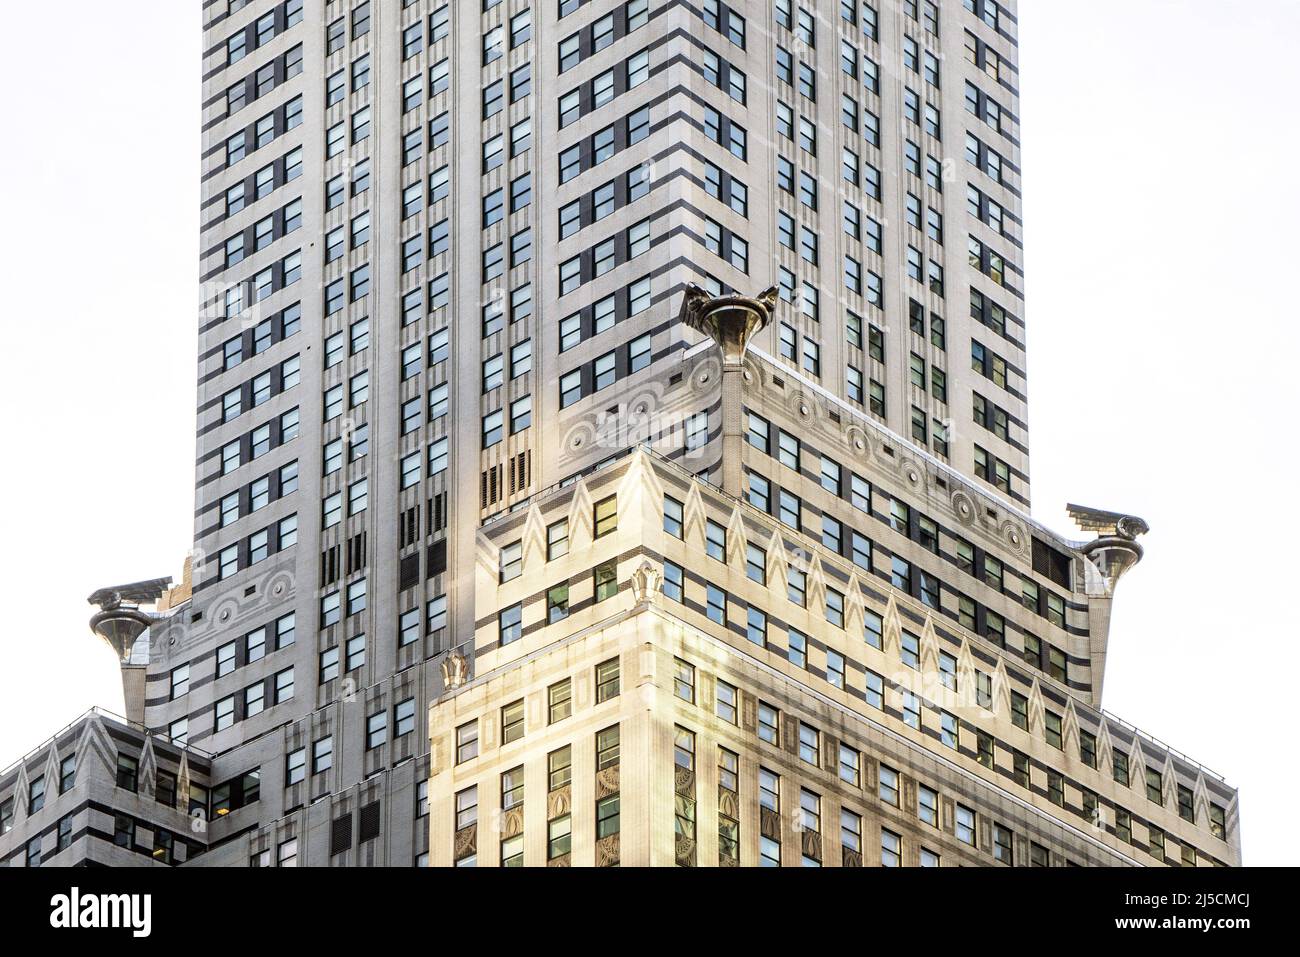 États-Unis, New York, 27.09.2019. Chrysler Building à Manhattan sur 27.09.2019. Le Chrysler Building est un gratte-ciel de la ville de New York et est l'un des points de repère de la métropole. Construit pour Chrysler Corporation entre 1928 et 1930, le bâtiment a été conçu dans le style Art déco par l'architecte William Van Alen. C'est l'un des plus beaux gratte-ciel de cette époque. [traduction automatique] Banque D'Images